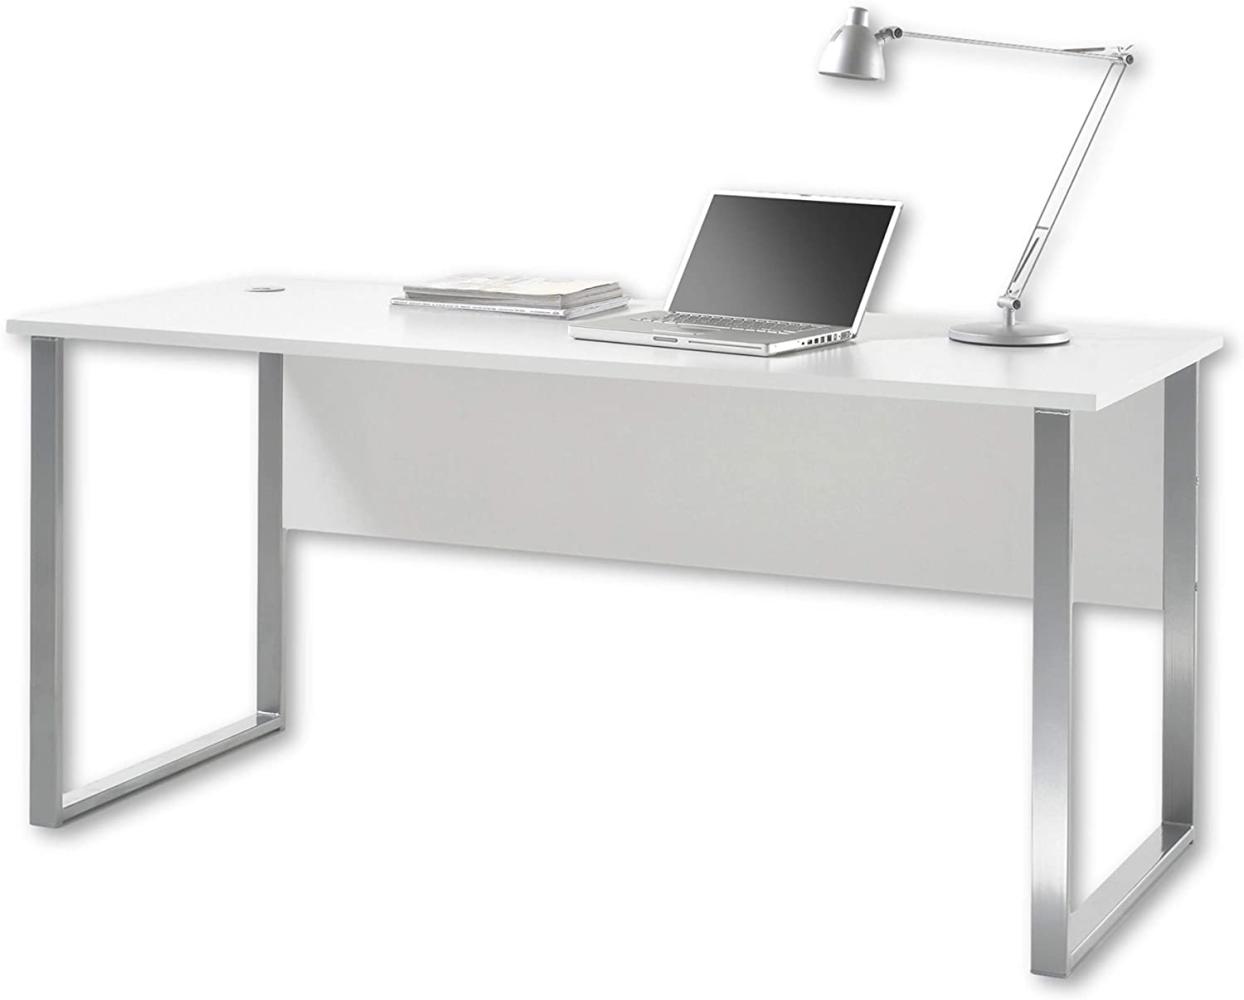 Stella Trading OFFICE LUX Schreibtisch inkl. Kabeldurchführung, grau - Bürotisch Computertisch mit großer Arbeitsfläche - Modernes Büromöbel Komplettset - 170 x 76 x 73 cm (B/H/T) Bild 1